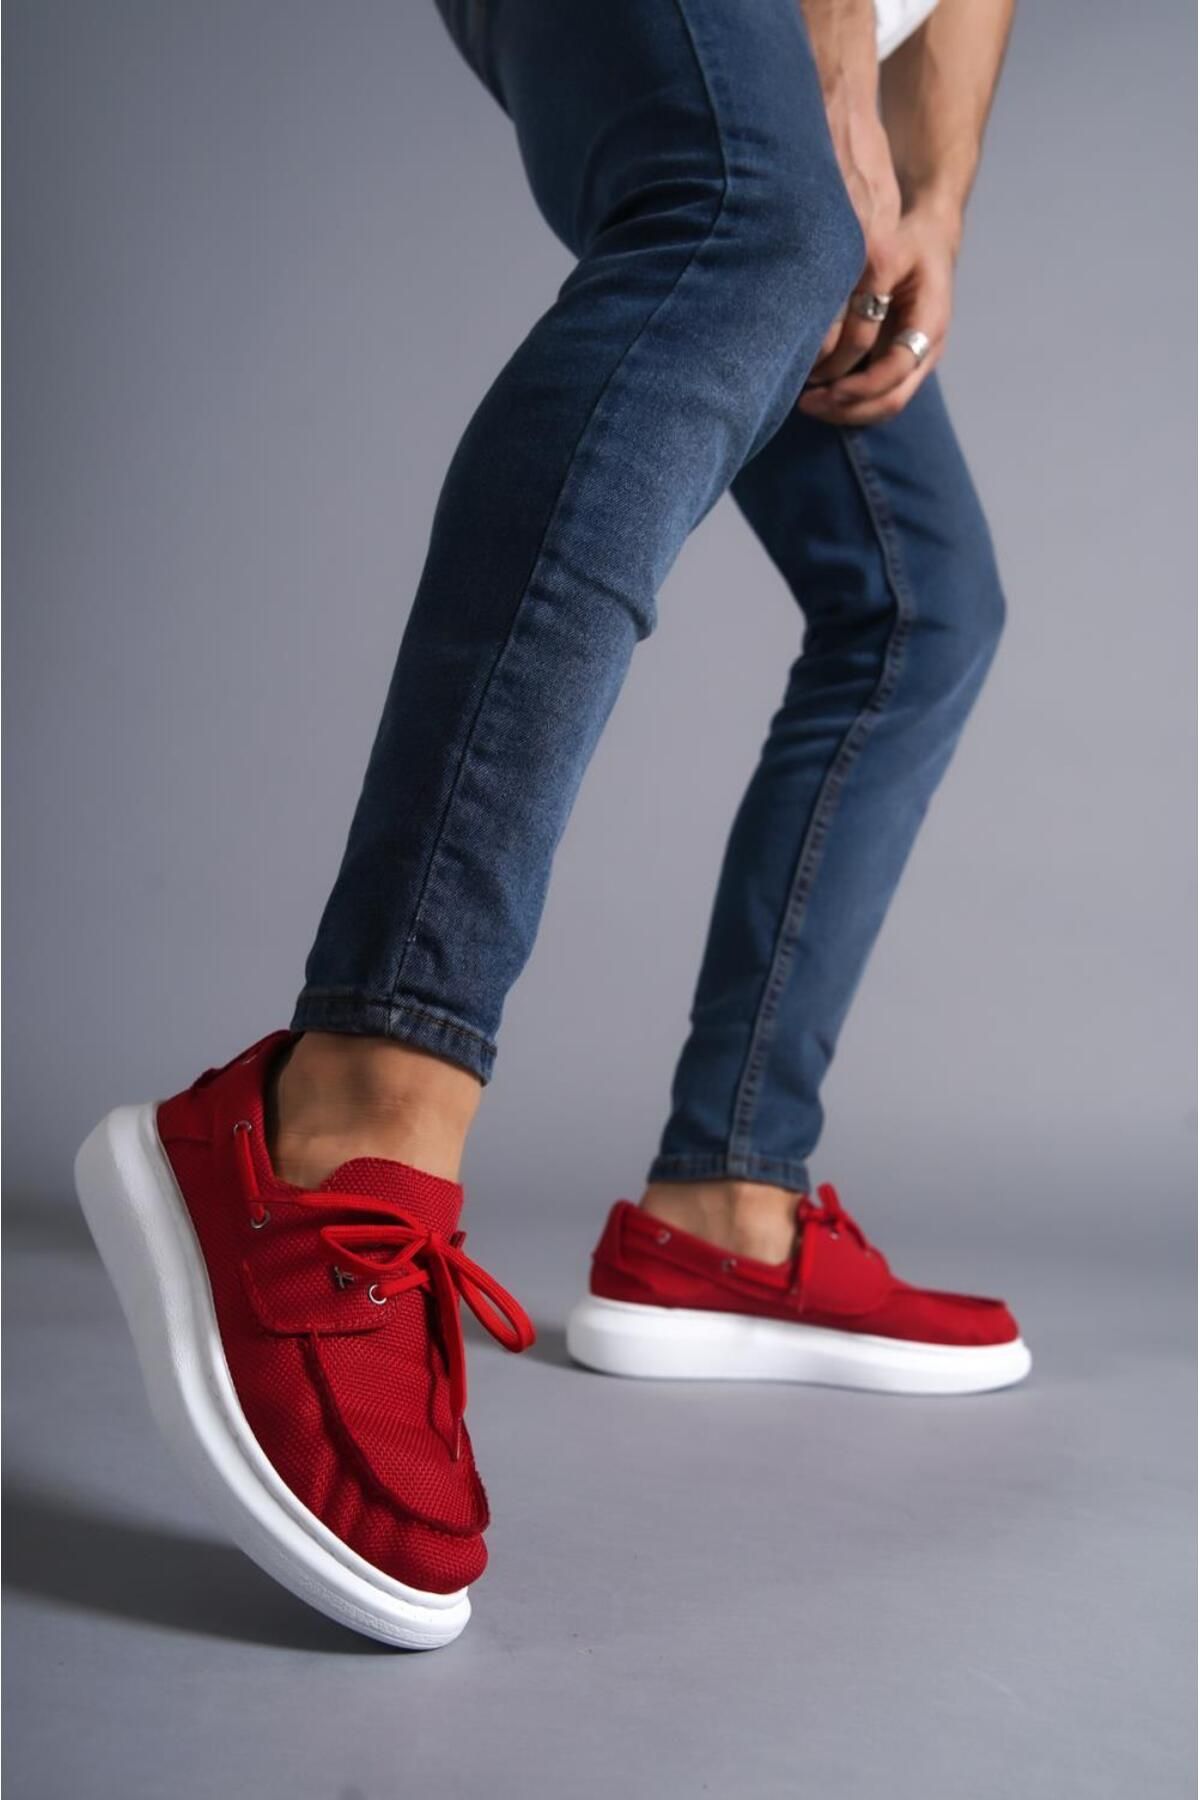 Mardel Store Ms-009 Bağcıklı Ortopedik Taban Mevsimlik Erkek Günlük Klasik Keten Ayakkabı Kırmızı